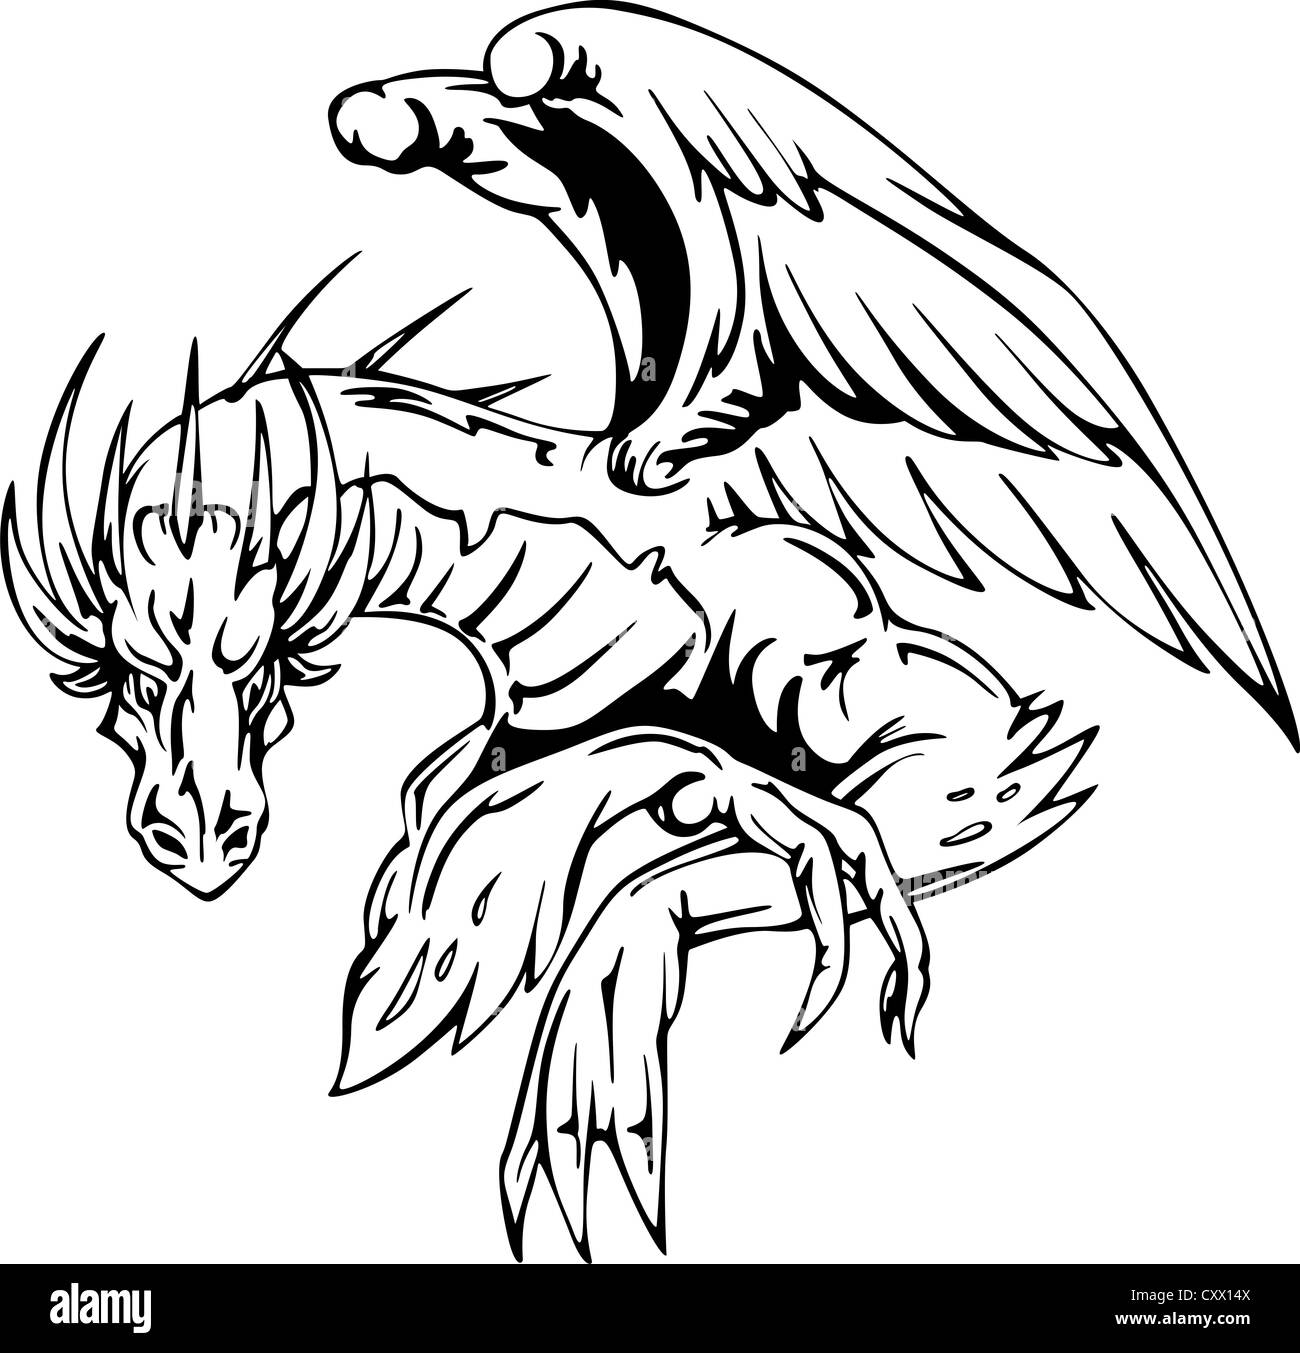 Dragon sentado - diseño de tatuaje. Ilustración vectorial EPS. Foto de stock